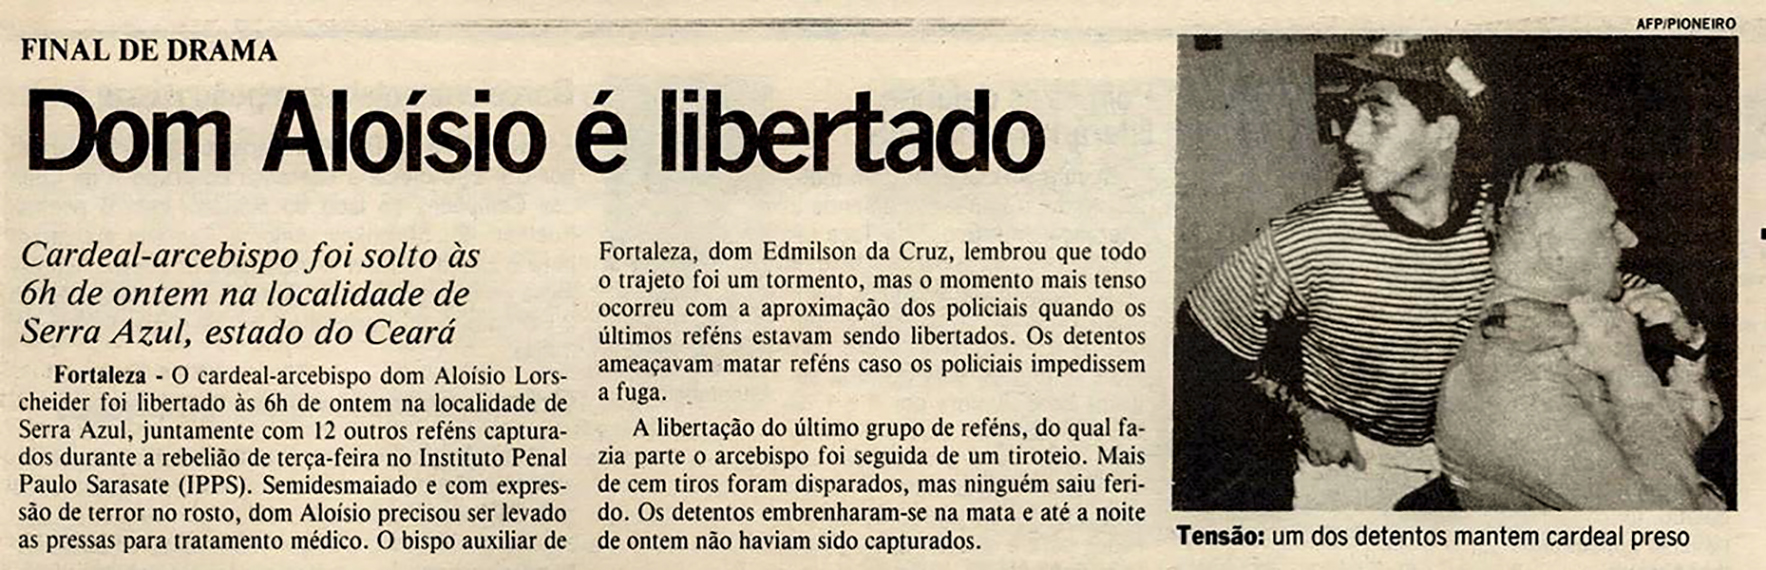 Jornal O Pioneiro noticia a libertação de D. Aloísio Lorscheider, após 18 horas em poder de sequestradores (imagem: Biblioteca Nacional Digital)